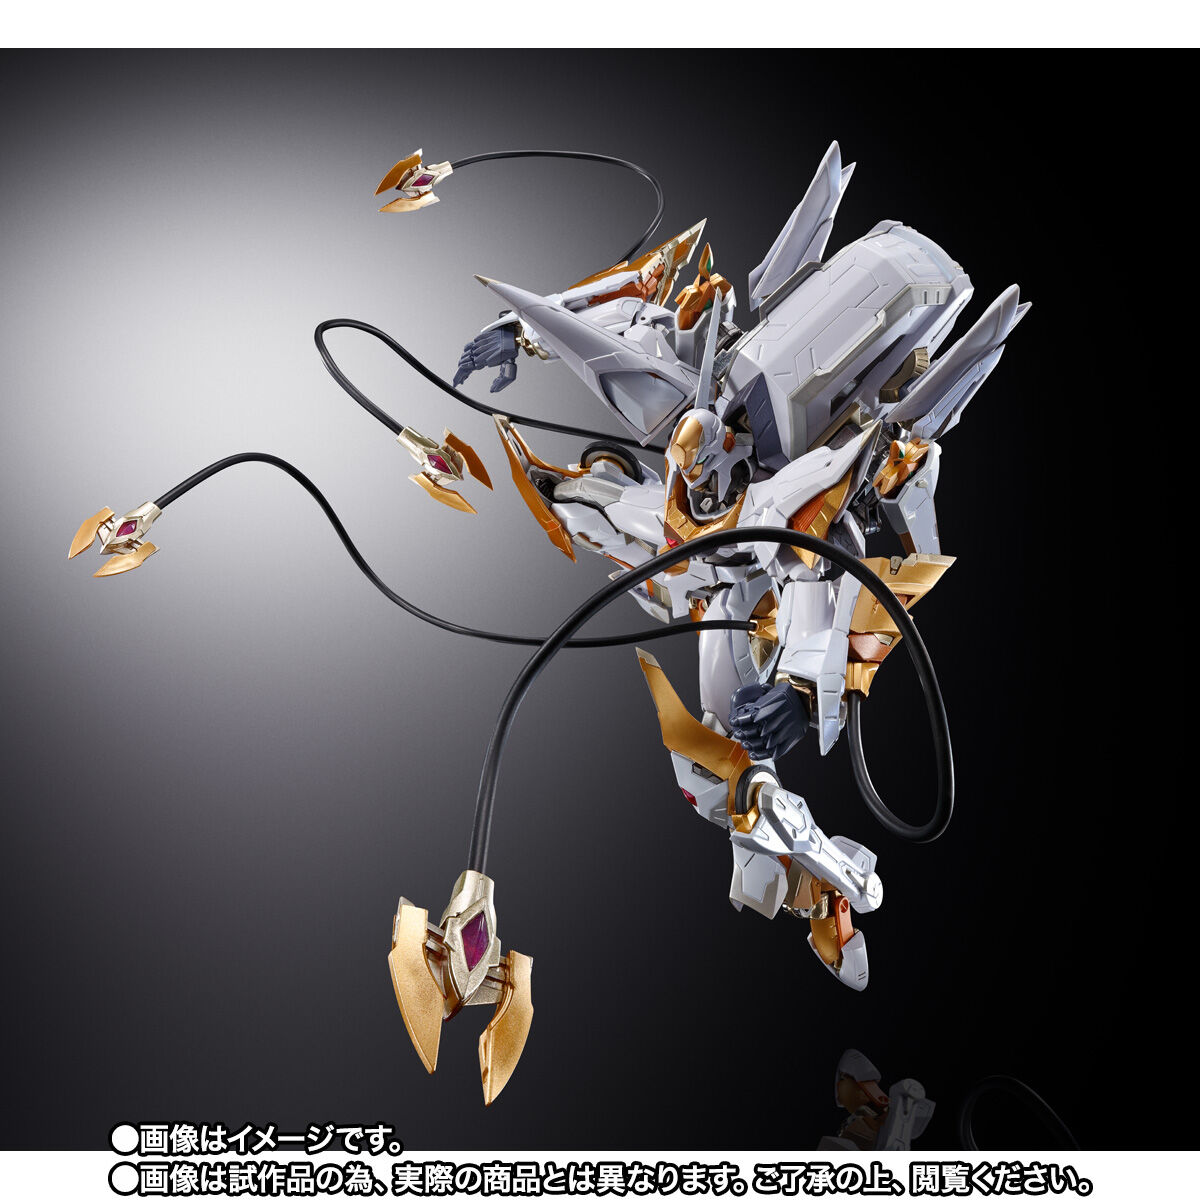 【限定販売】METAL BUILD DRAGON SCALE『ランスロット・アルビオン』コードギアス 反逆のルルーシュR2 可動フィギュア-008